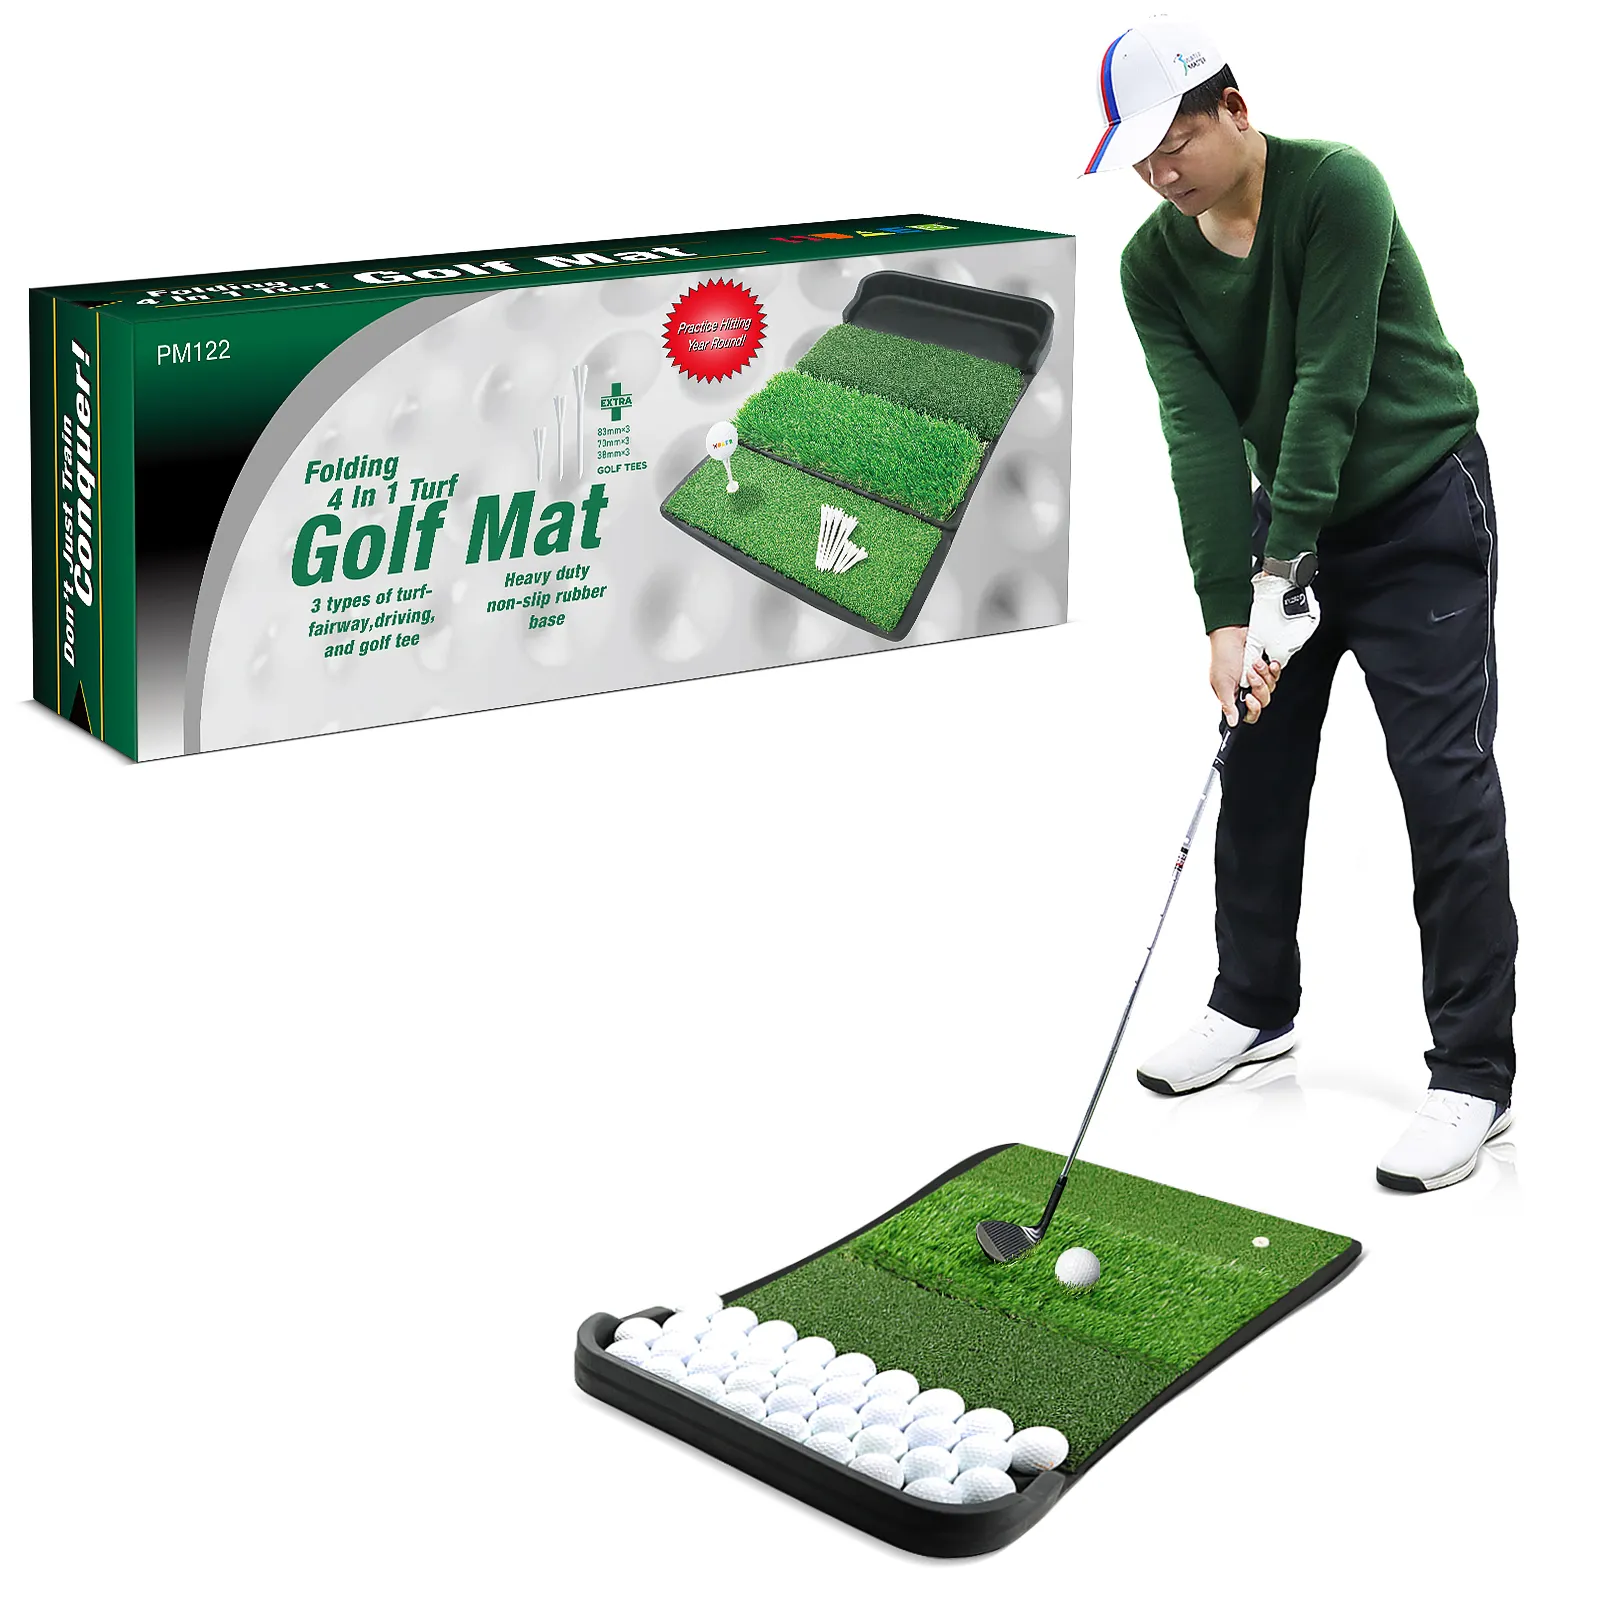 Novo Lançamento Golf Bater Mat com Bandeja Fabricante de Golfe Ao Ar Livre Indoor Formação Prática Aids Fornecimento de Fábrica Personalizado, patenteado